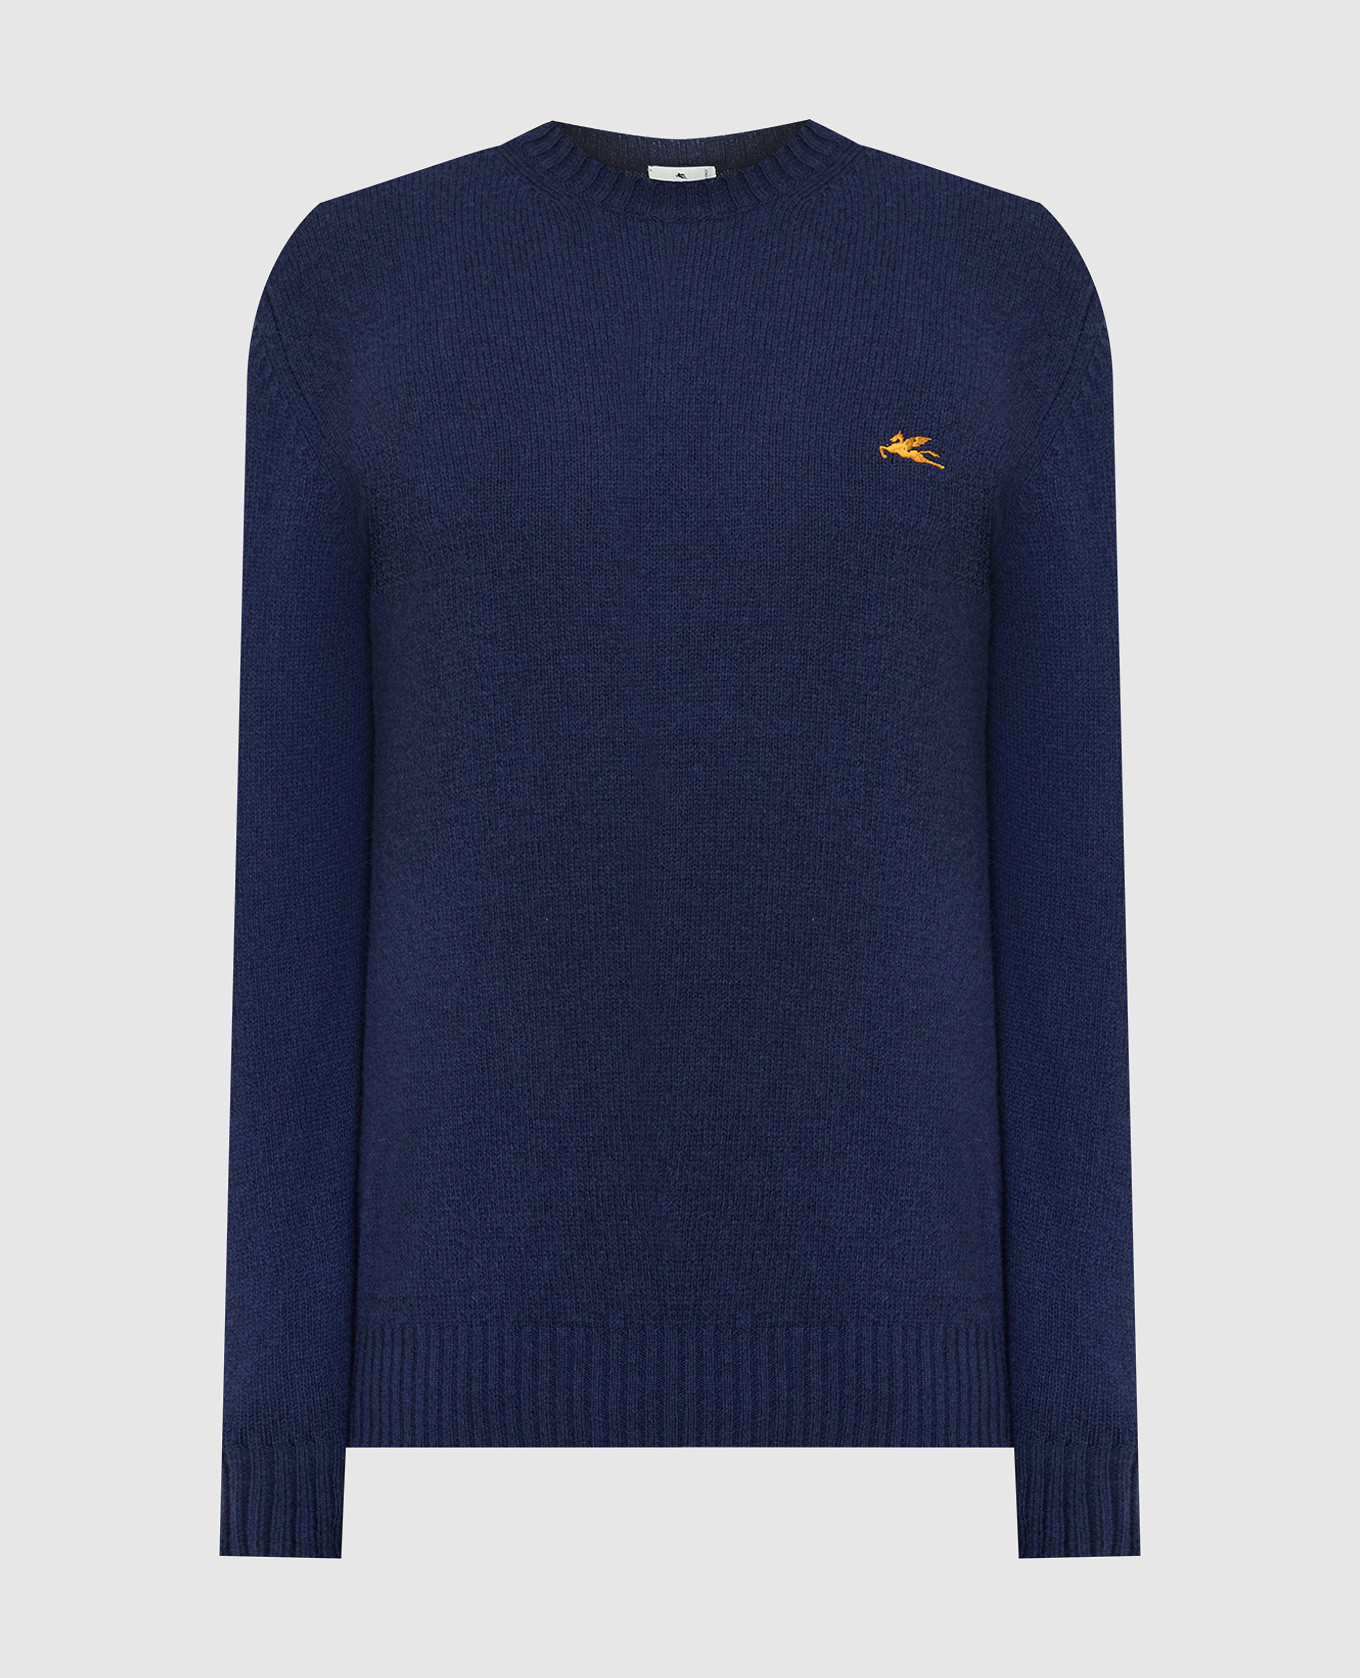 Темно-синий свитер из шерсти с вышивкой логотипа